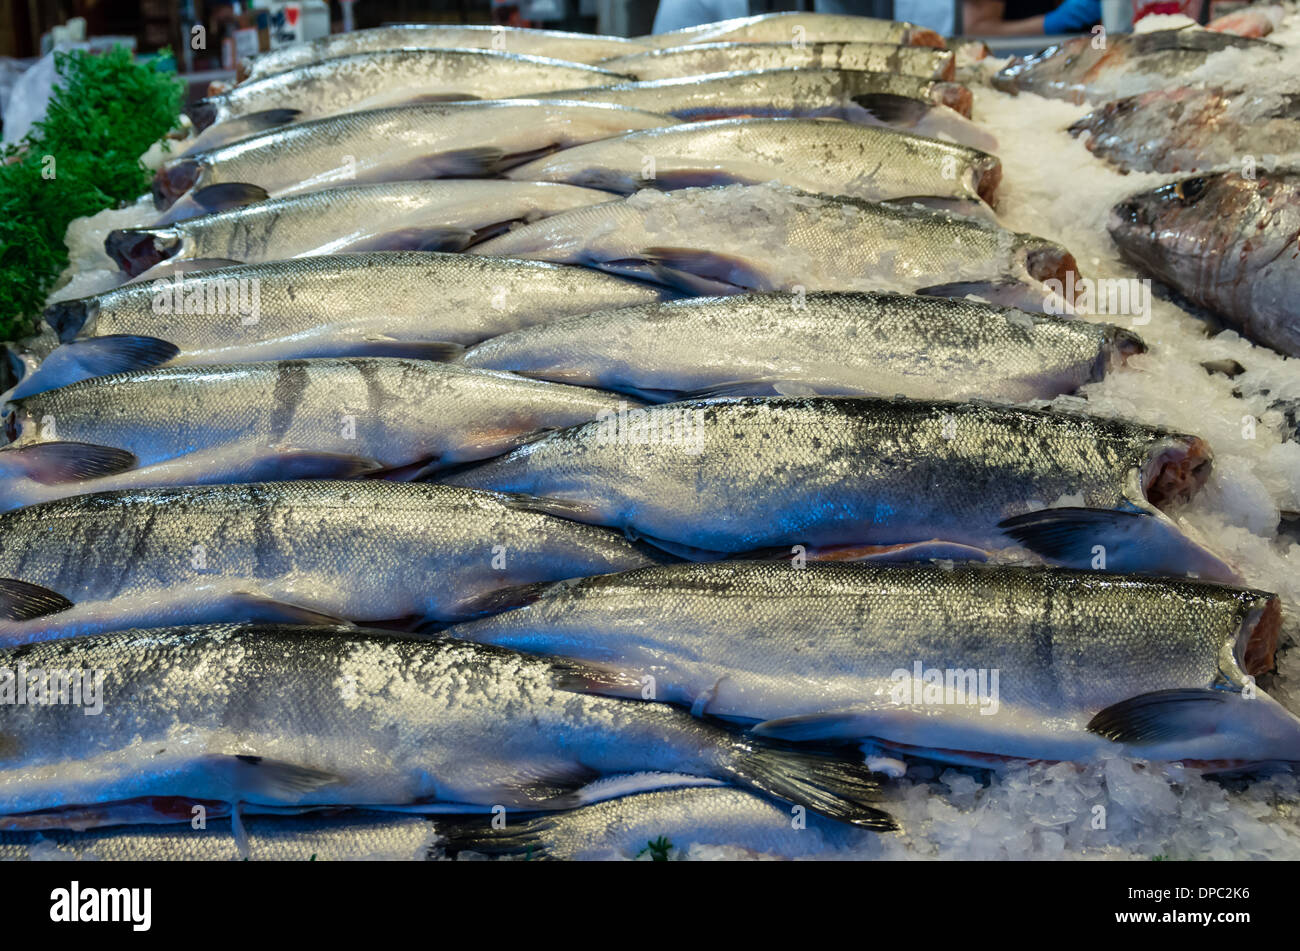 King Salmon auf Eis bei einem Fischhändler Markt stall Pike Place Market Seattle, Washington, USA Stockfoto